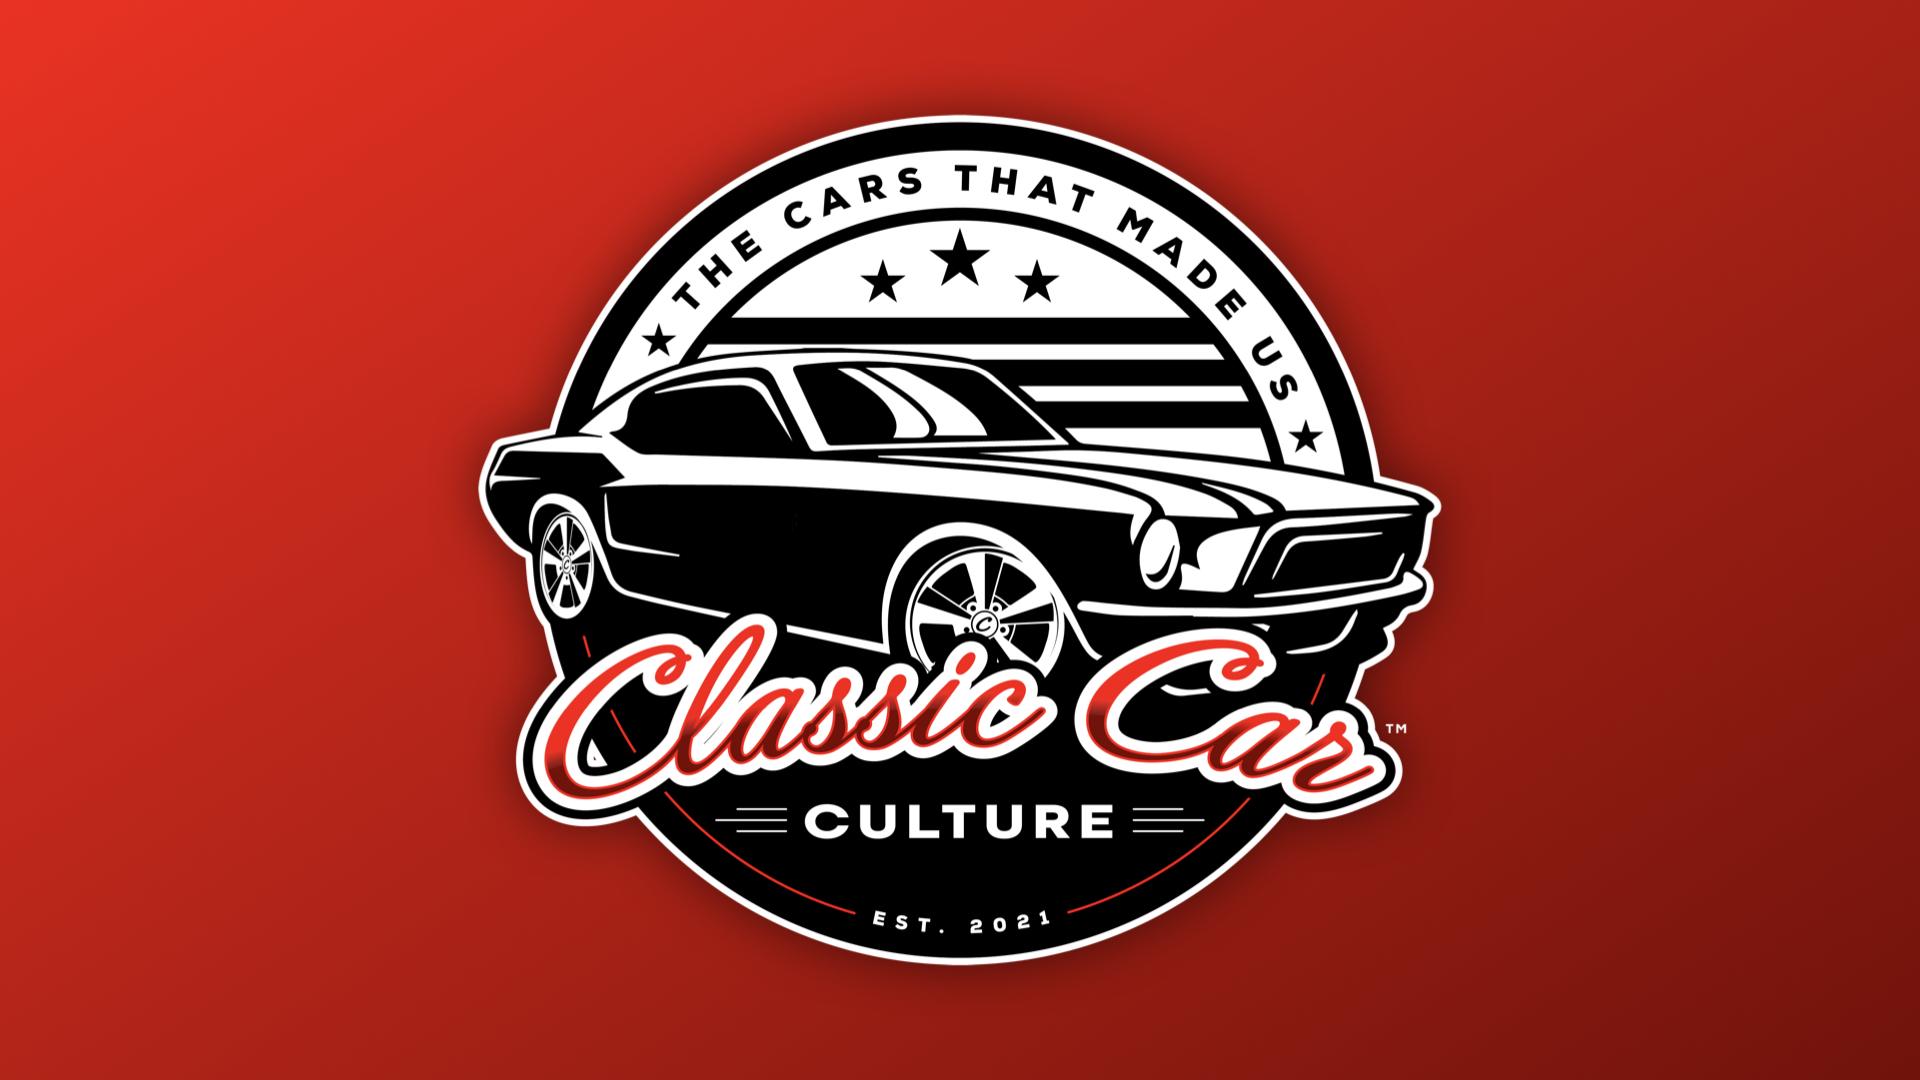 CLASSIC CAR CULTURE